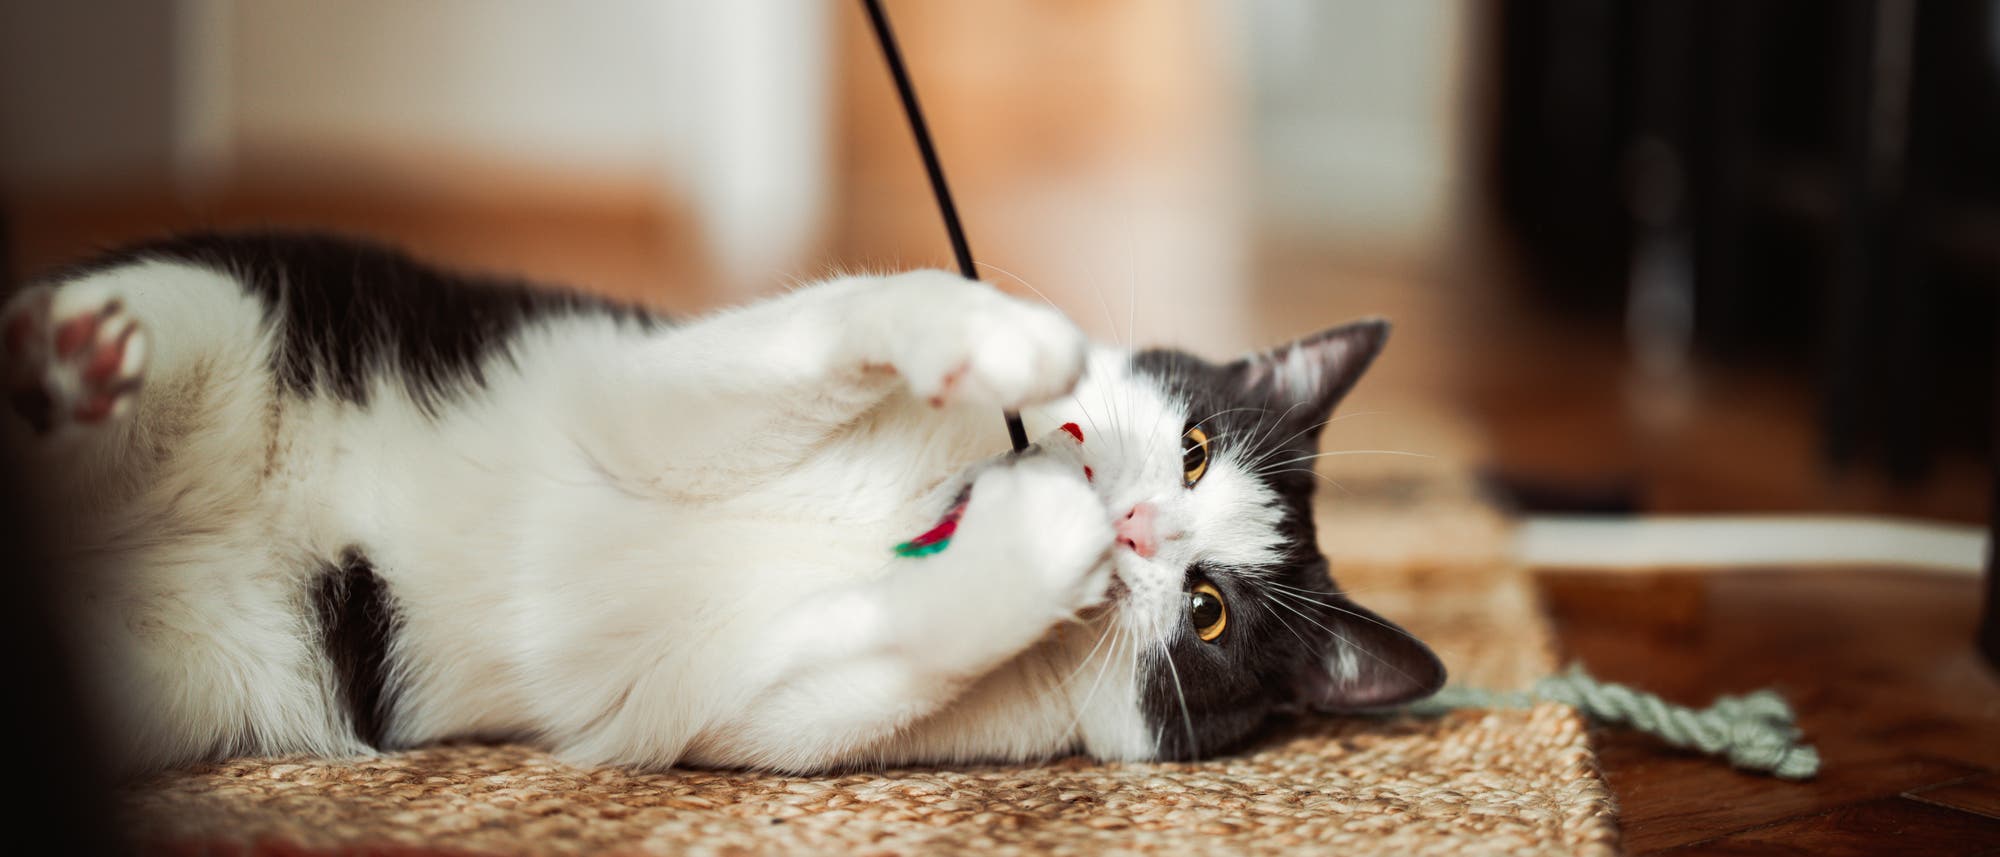 Katze liegt mit einer Spielangel auf dem Teppichboden und spielt